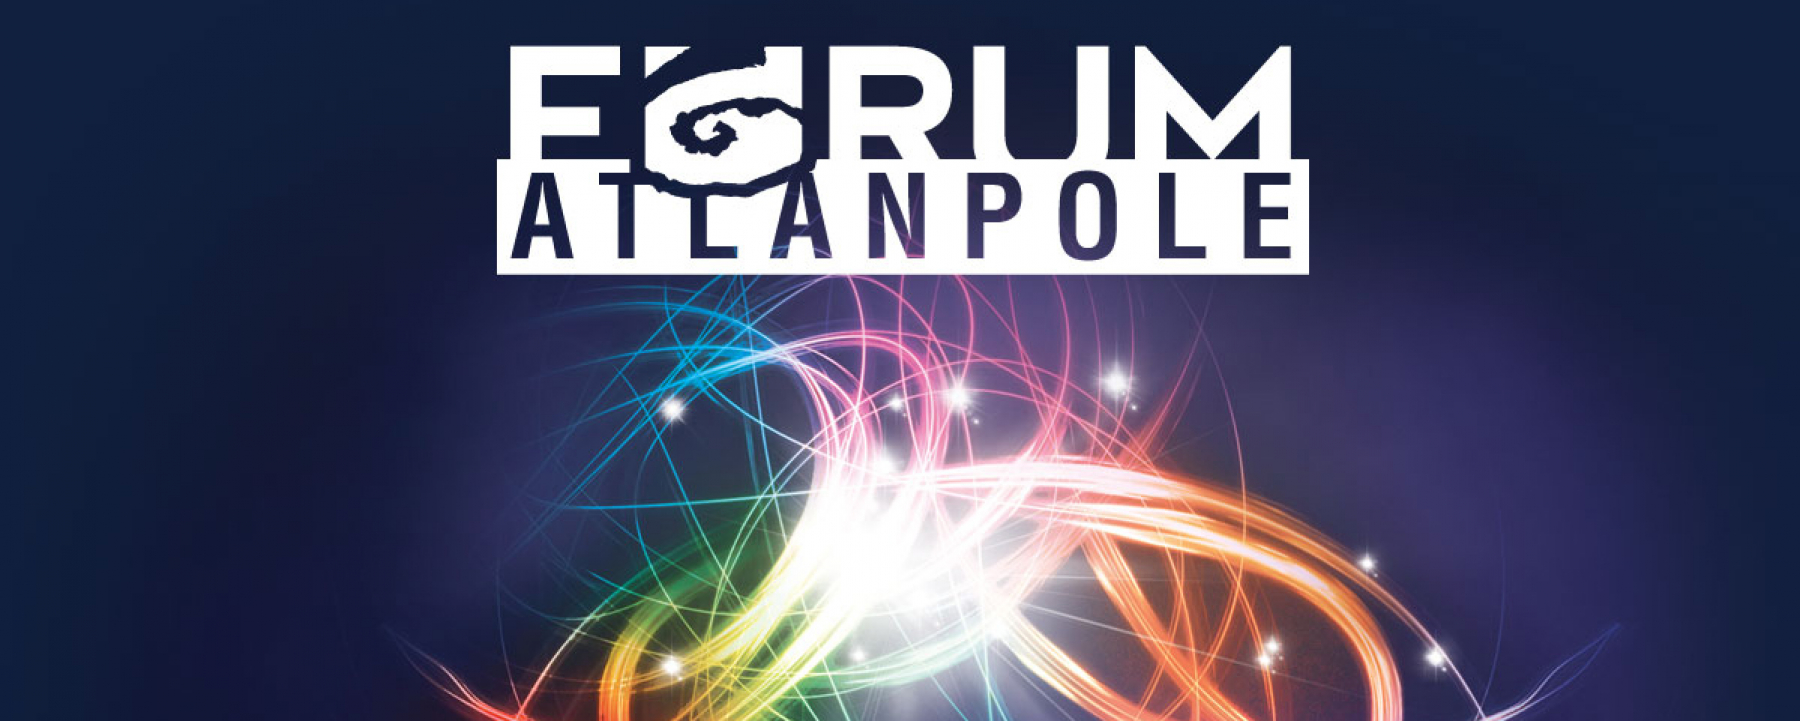 Forum Atlanpole 2020, un événement organisé par Atlanpole